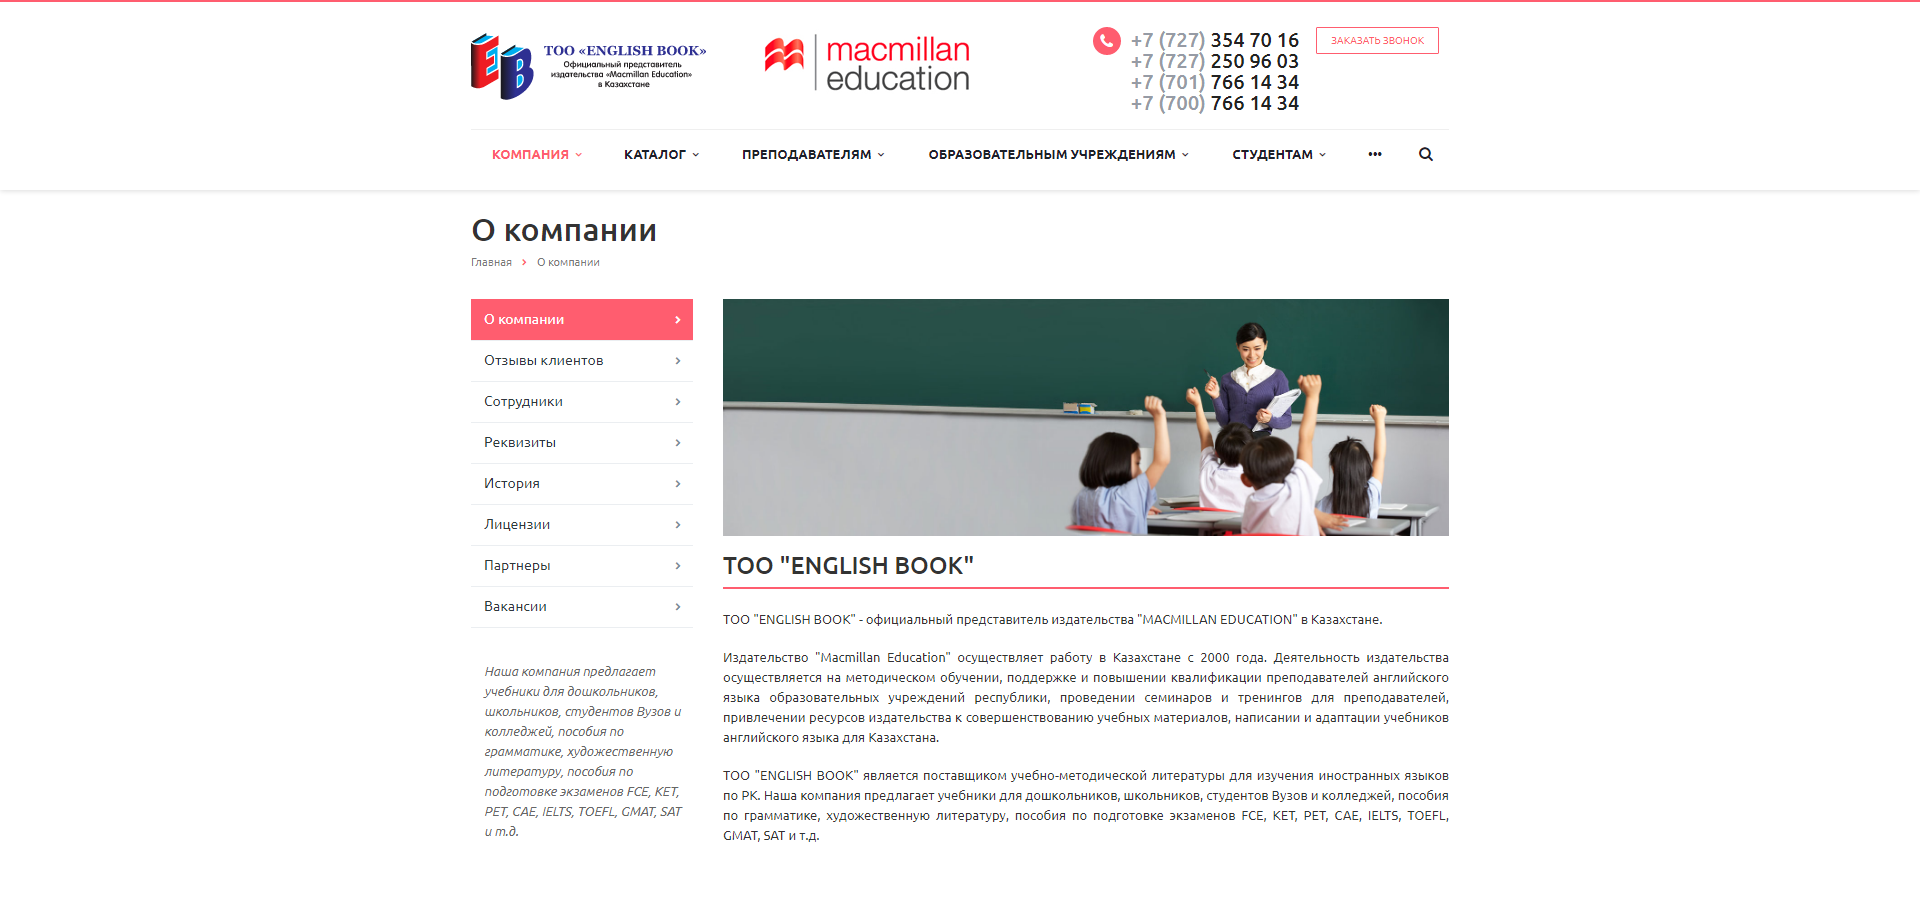 сайт englishbook.kz поставщик учебно-методической литературы для изучения иностранных языков по рк